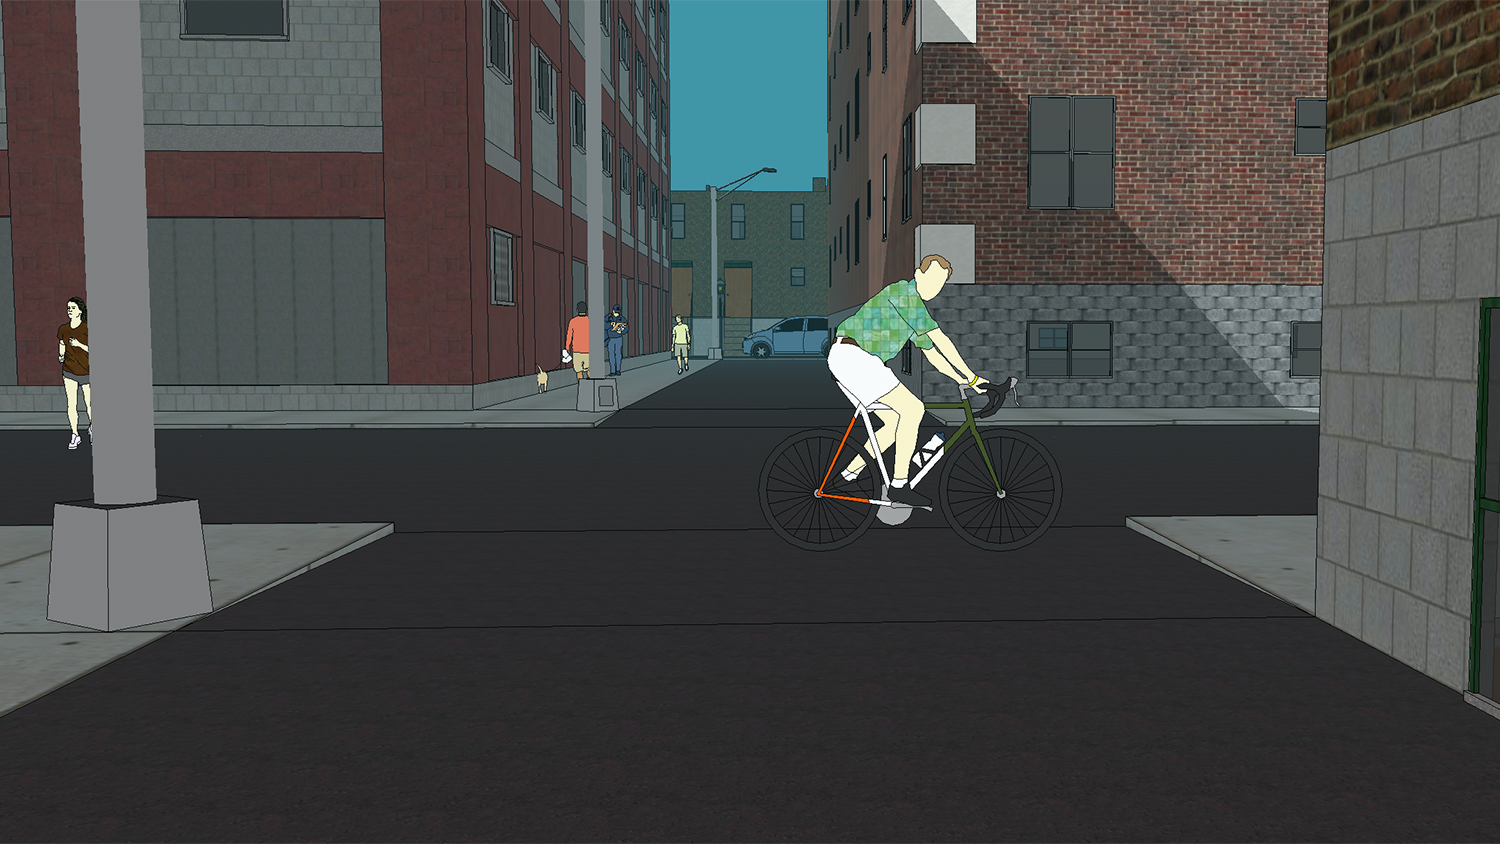 街道交叉点的计算机图象与直接前进的自行车骑士和在左边的慢跑者